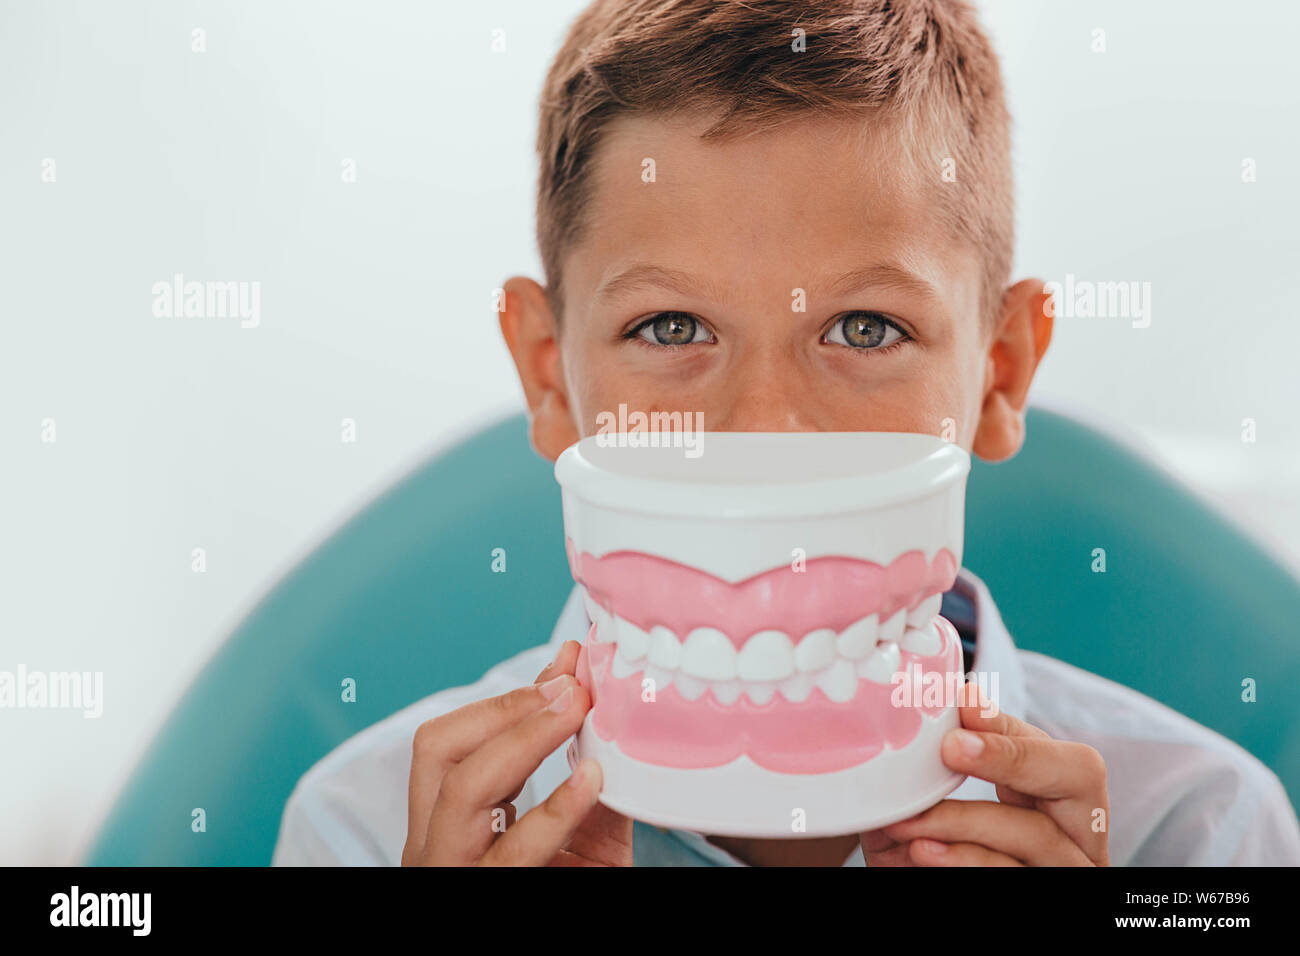 Cute boy modèle montrant des dents en face de sa bouche,selective focus sur les yeux. Publicité drôle de traitement des dents de l'enfant Banque D'Images